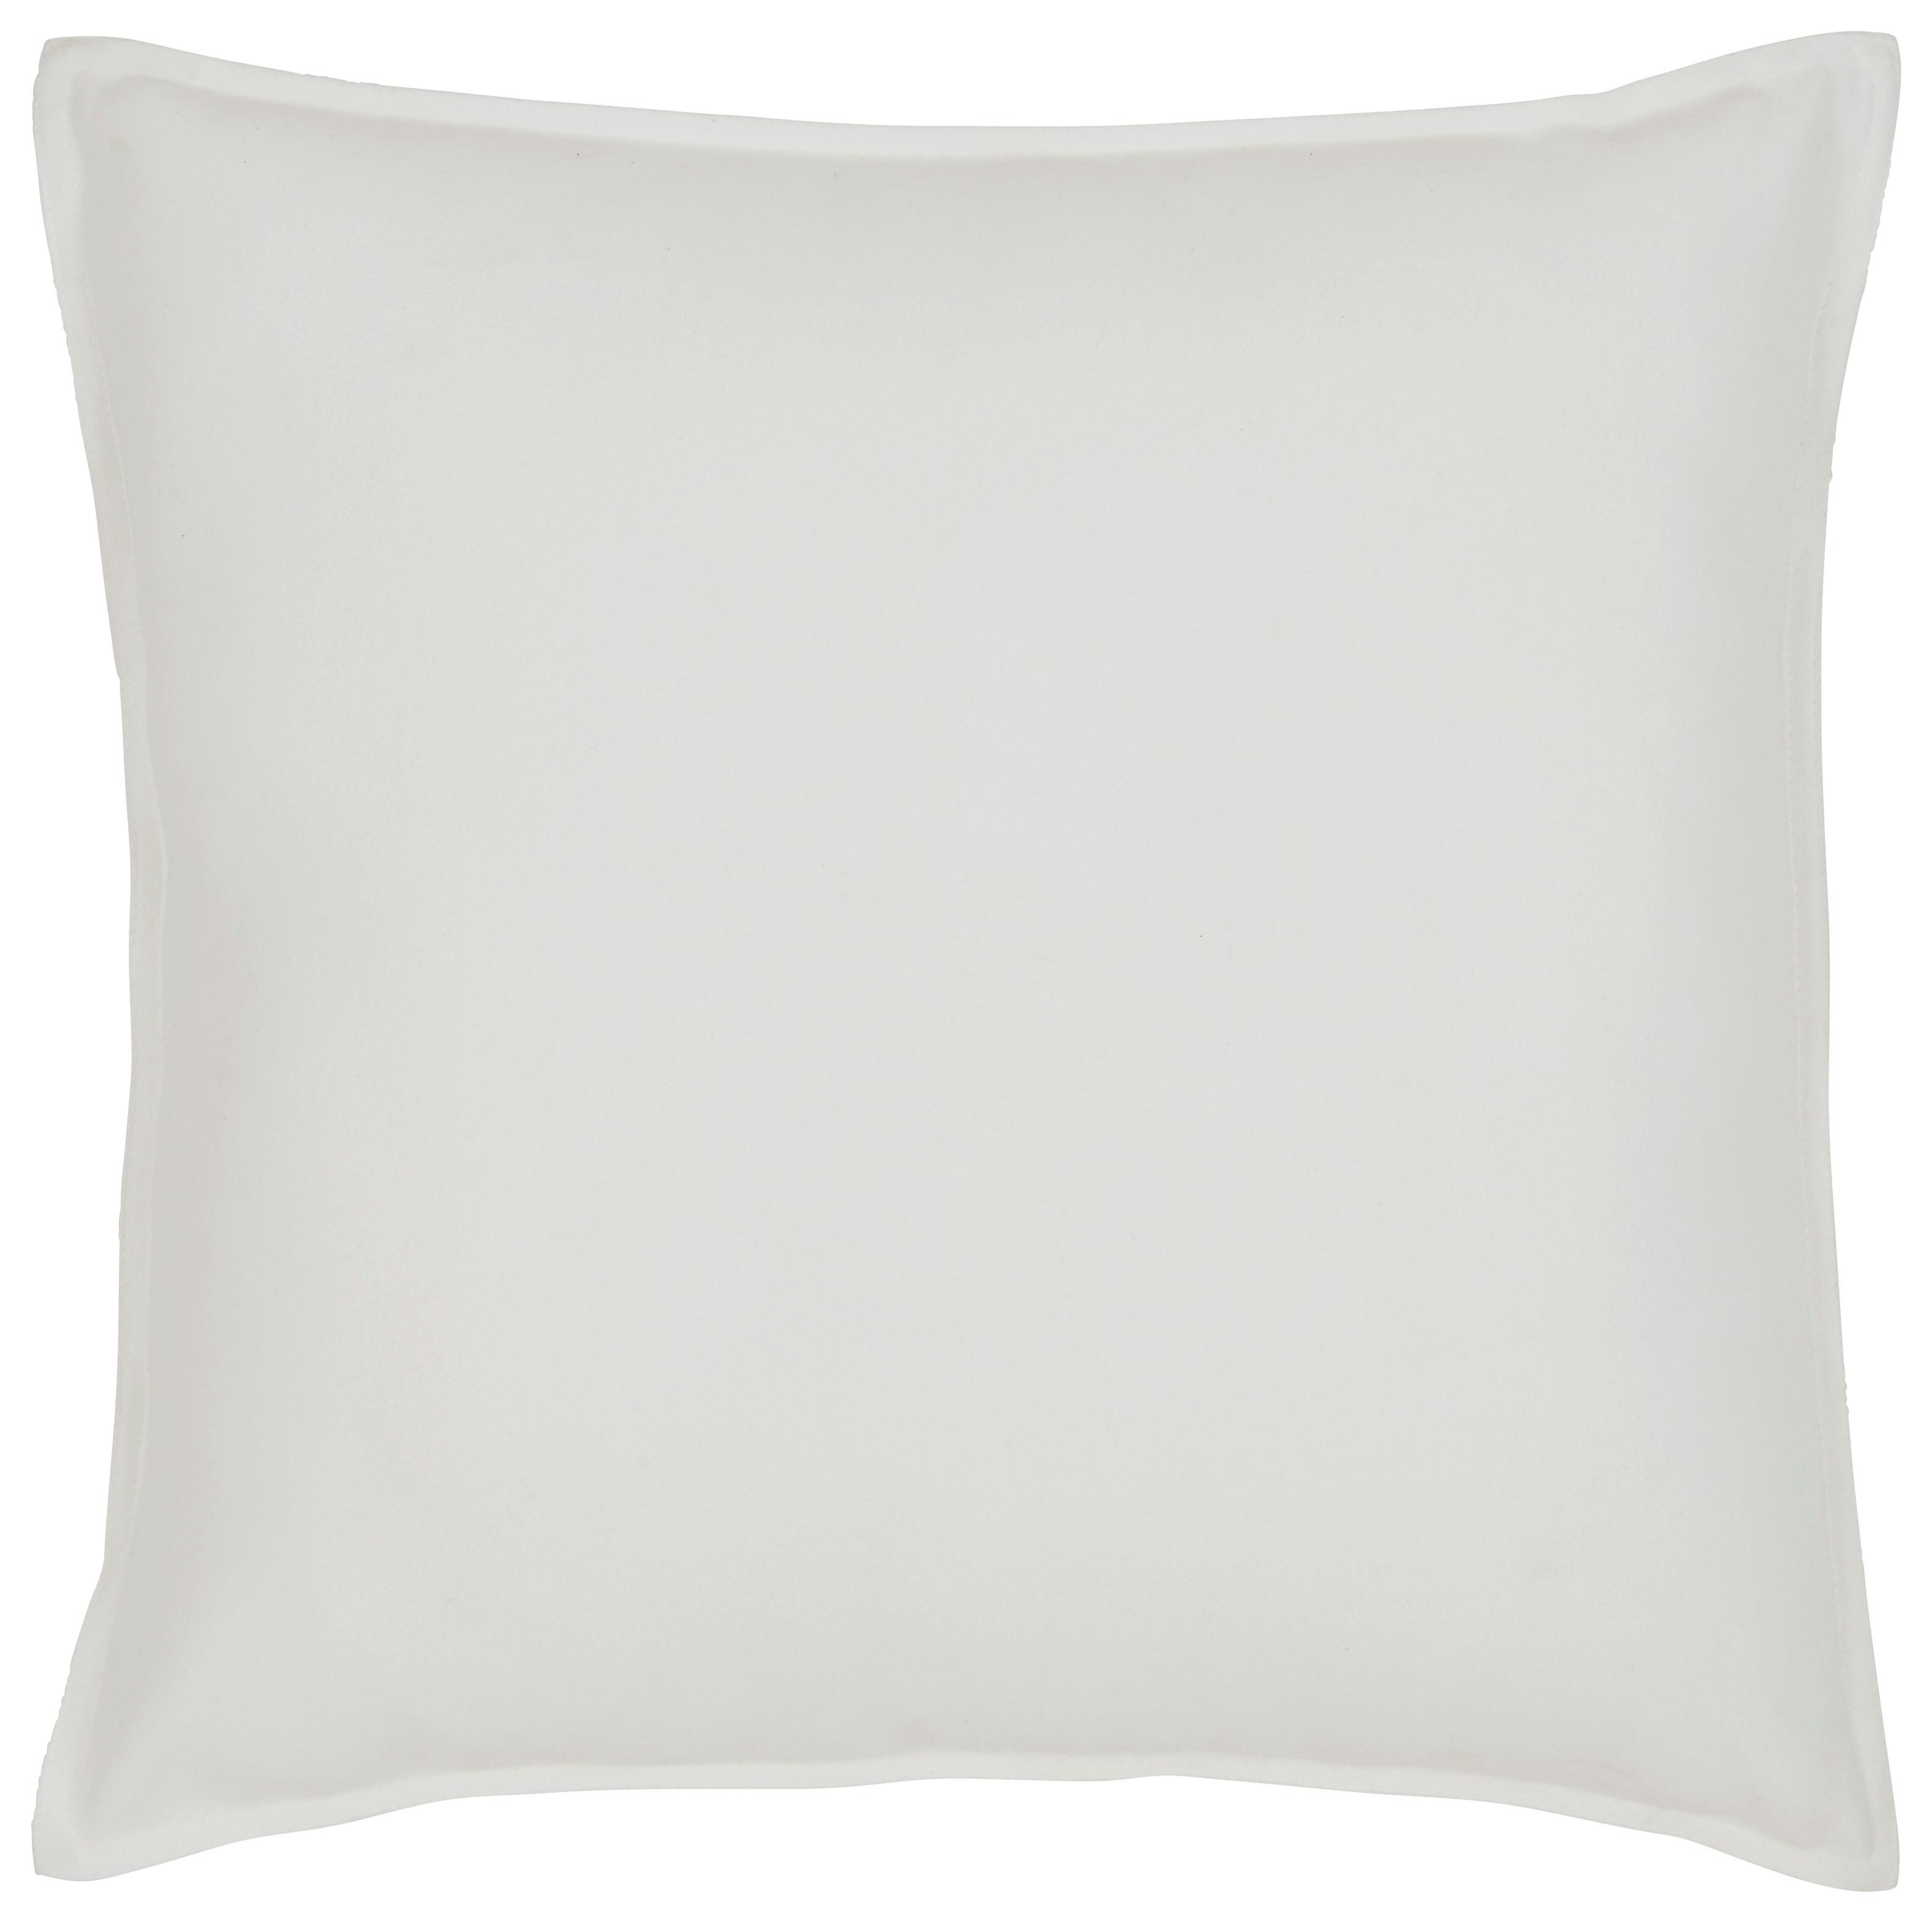 Polštář Ozdobný Poppy, 45/45cm, Bílá - bílá, Moderní, textil (45/45cm) - Modern Living